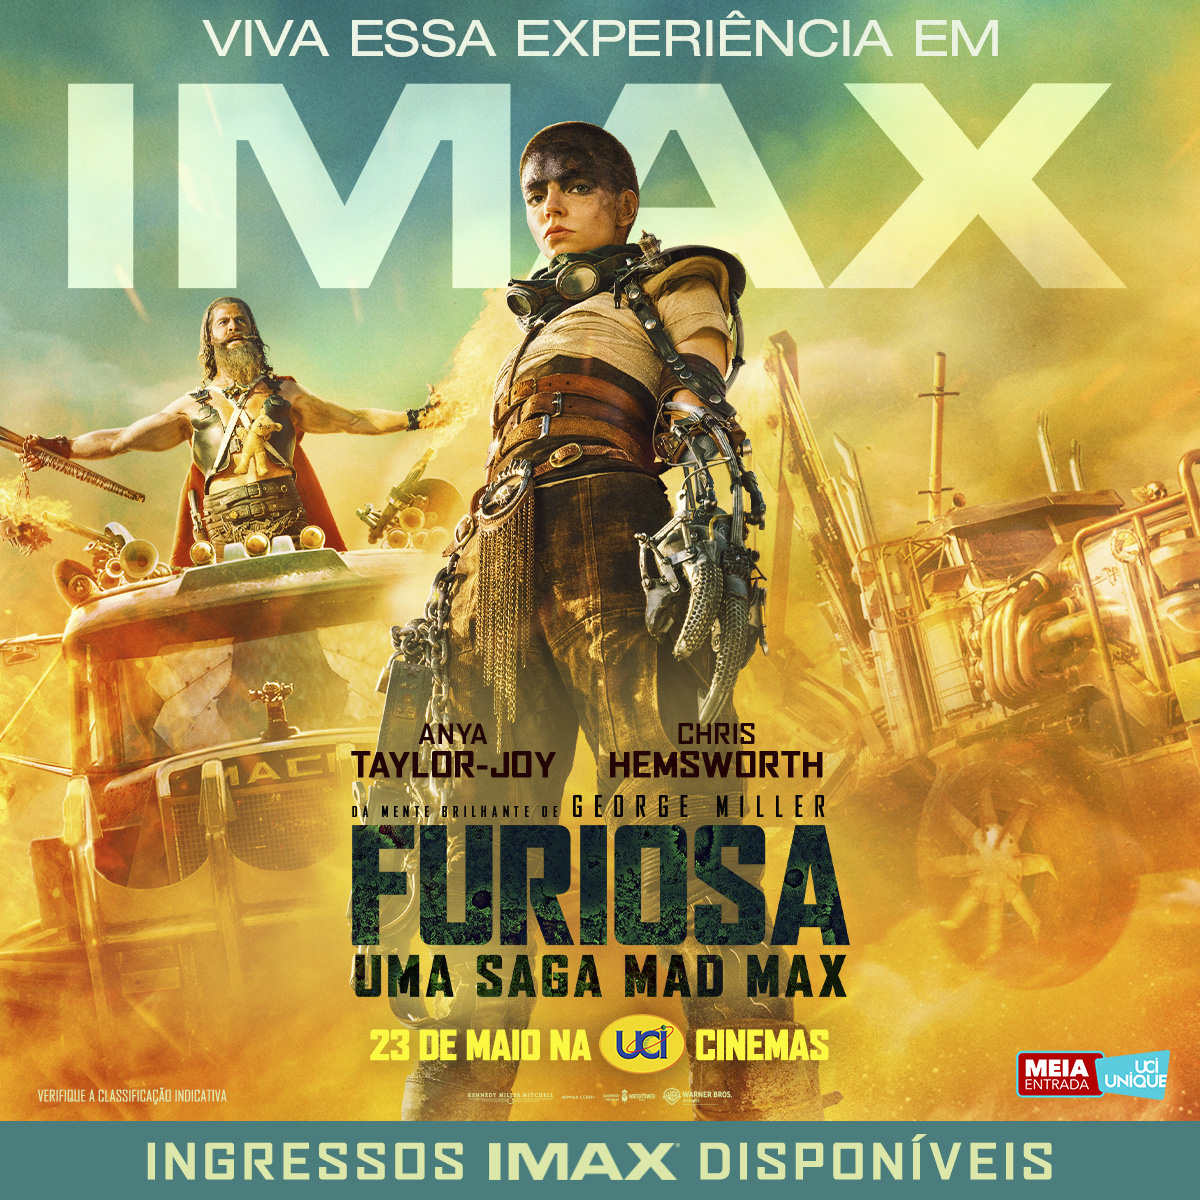 Senhora e senhores. Quase uma década depois, as origens da Saga Mad Max são reveladas em IMAX. #FuriosaFilme: Uma Saga Mad Max - 23 de maio, na UCI.

Pré-venda disponível no link da bio. #VivaEmIMAX